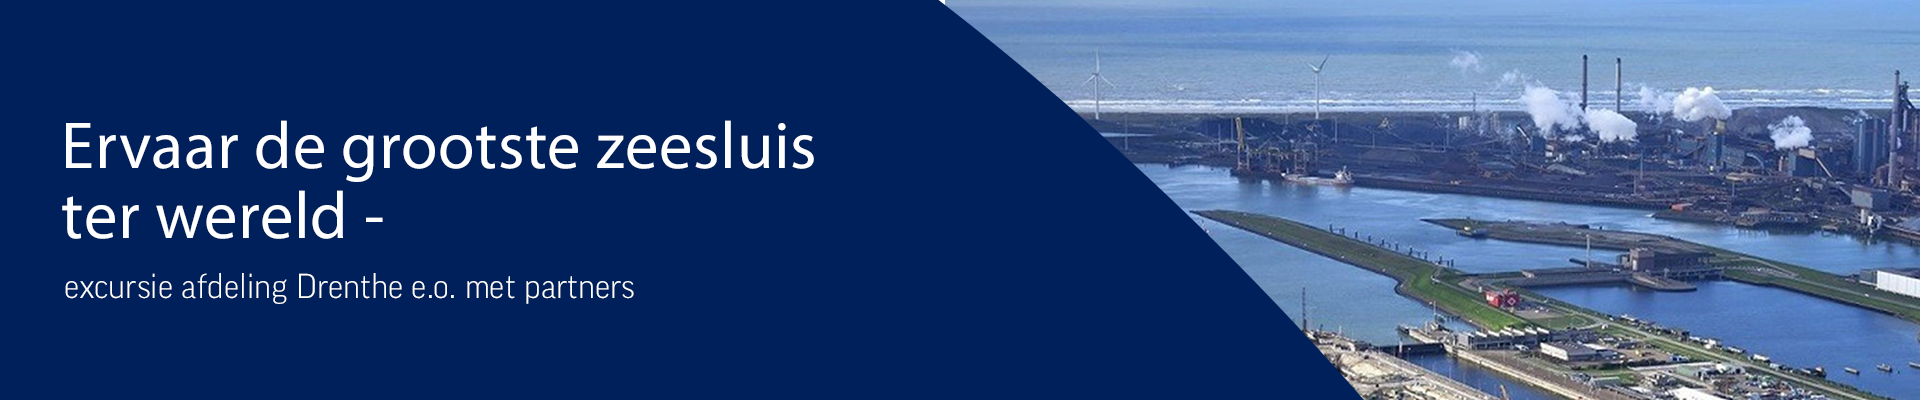 GEANNULEERD Ervaar de grootste zeesluis ter wereld – excursie afdeling Drenthe e.o.